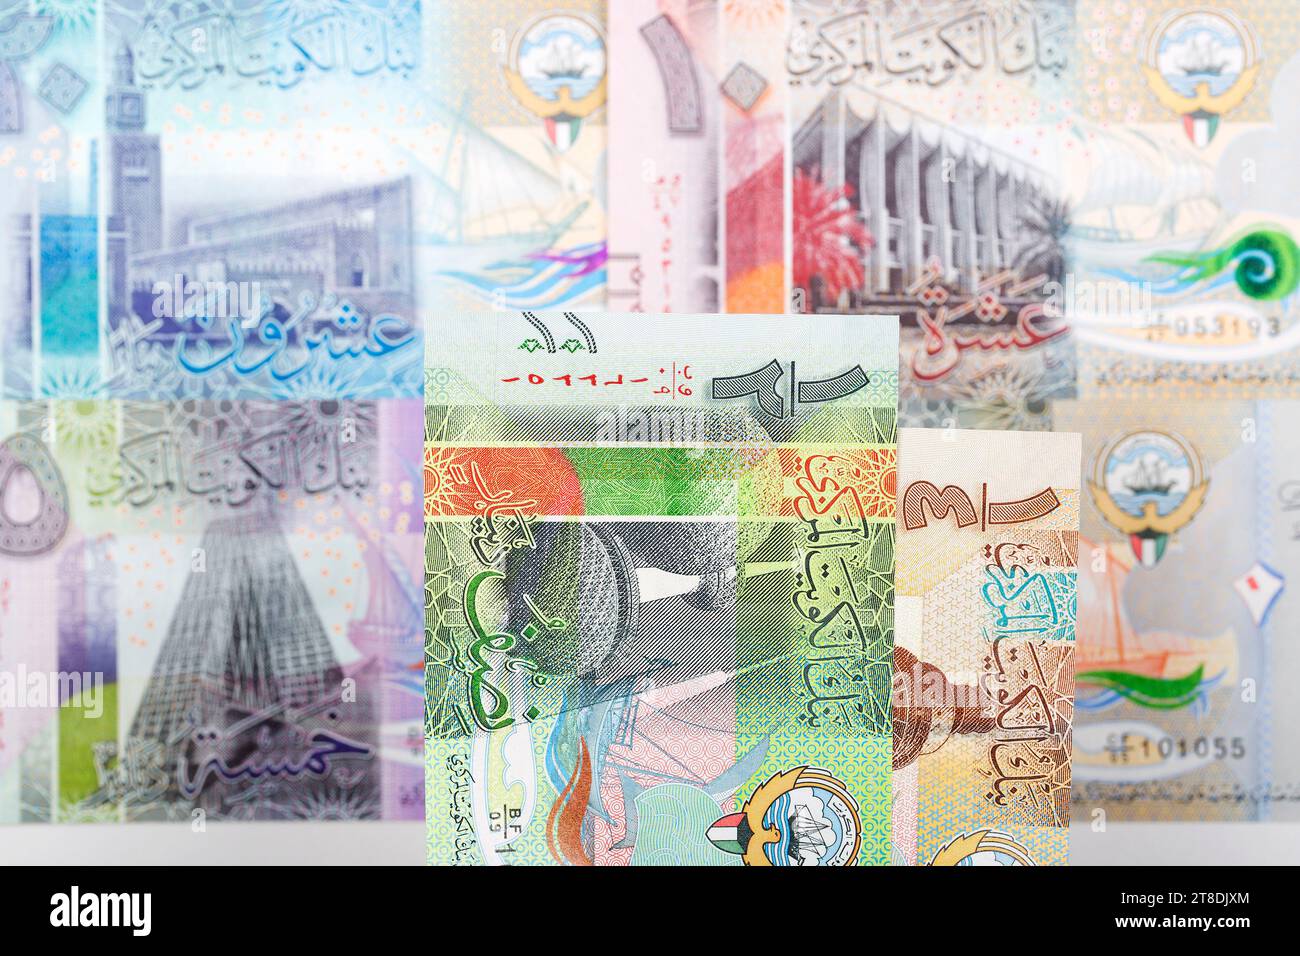 Soldi kuwaitiani - esperienza commerciale dinara Foto Stock